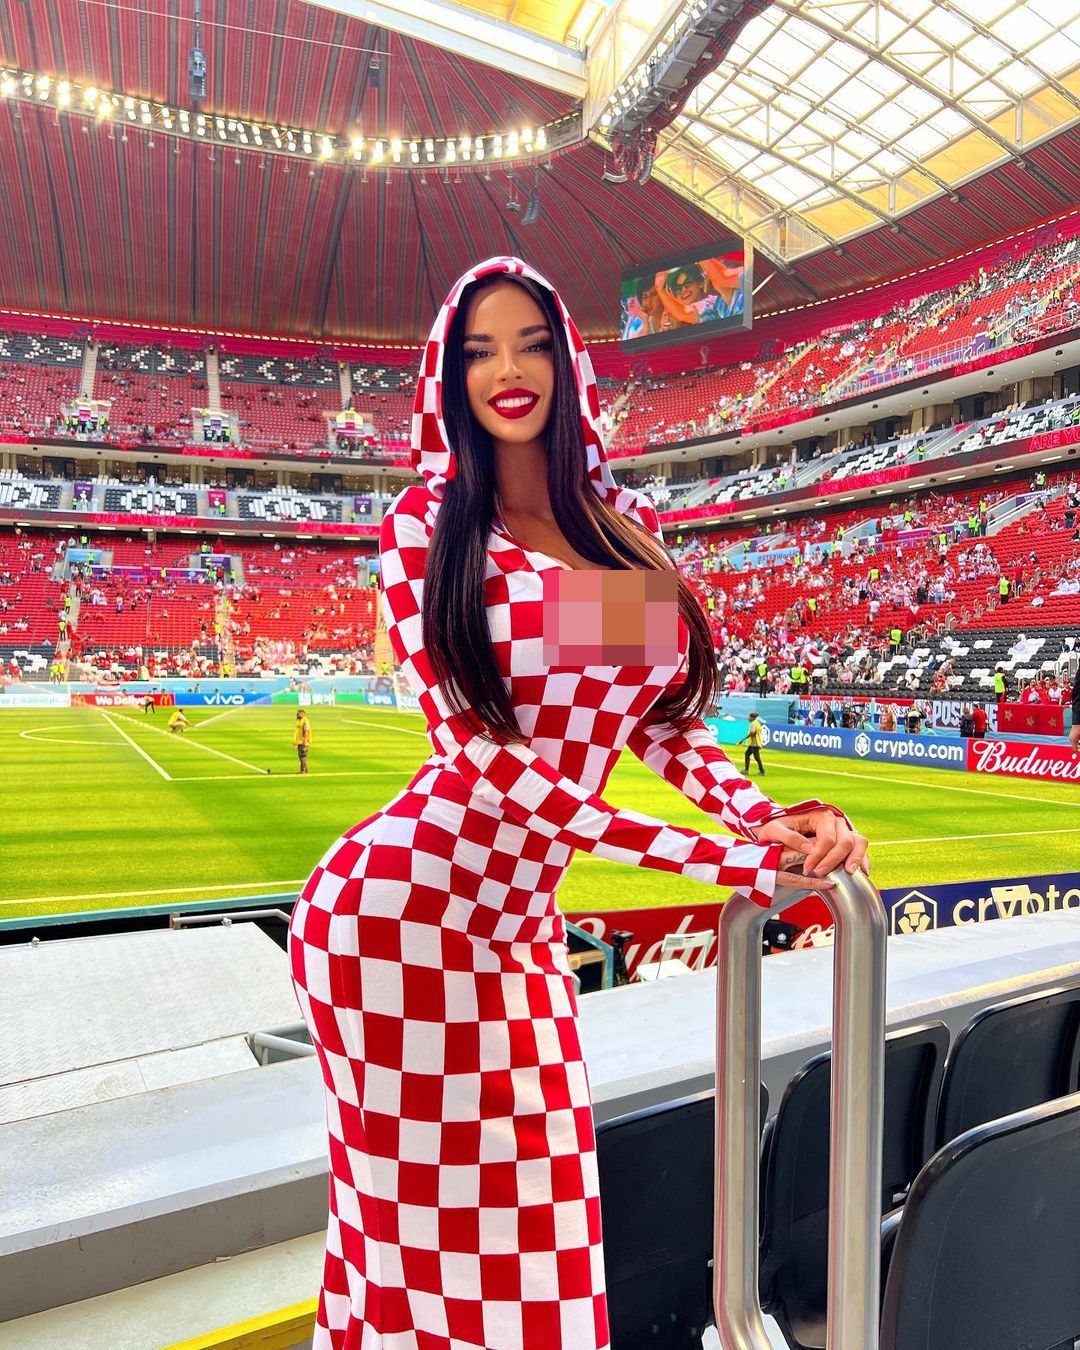 Kecantikan Kroasia telah dikritik oleh penduduk setempat karena ingin tampil glamor di Piala Dunia di Qatar